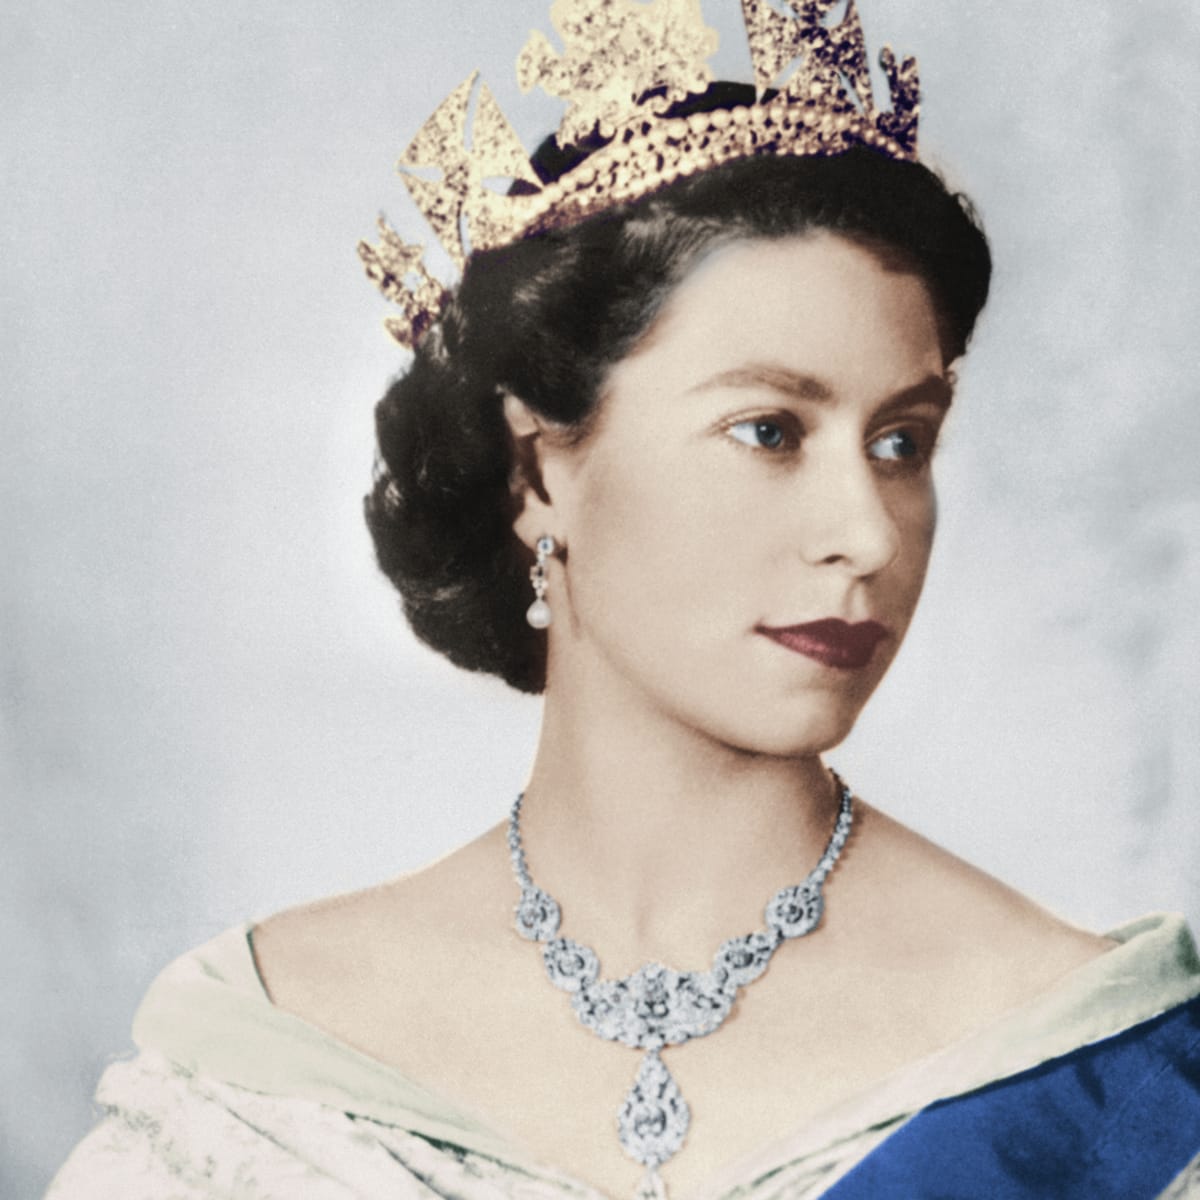 Bebington remembers her Majesty Queen Elizabeth II